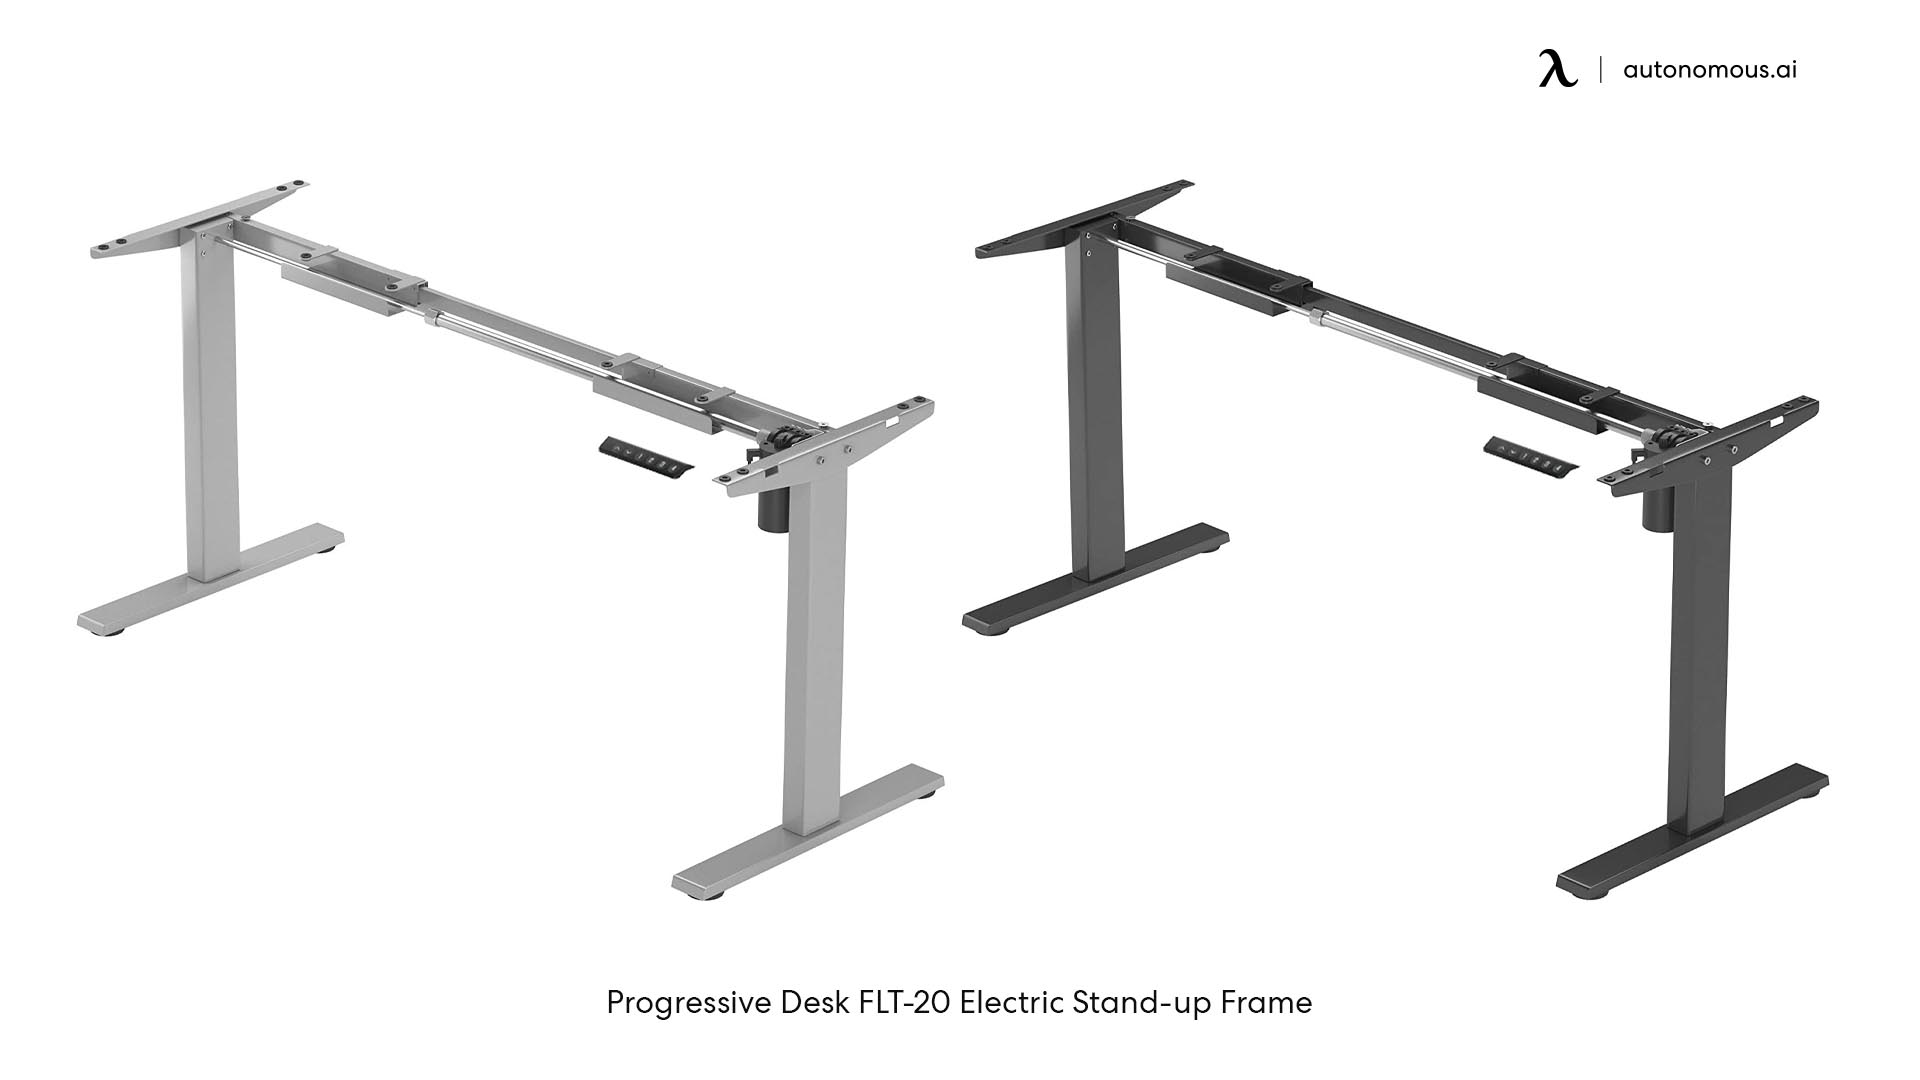 Progressive Desk FLT-20 Electric Stand-up Frame